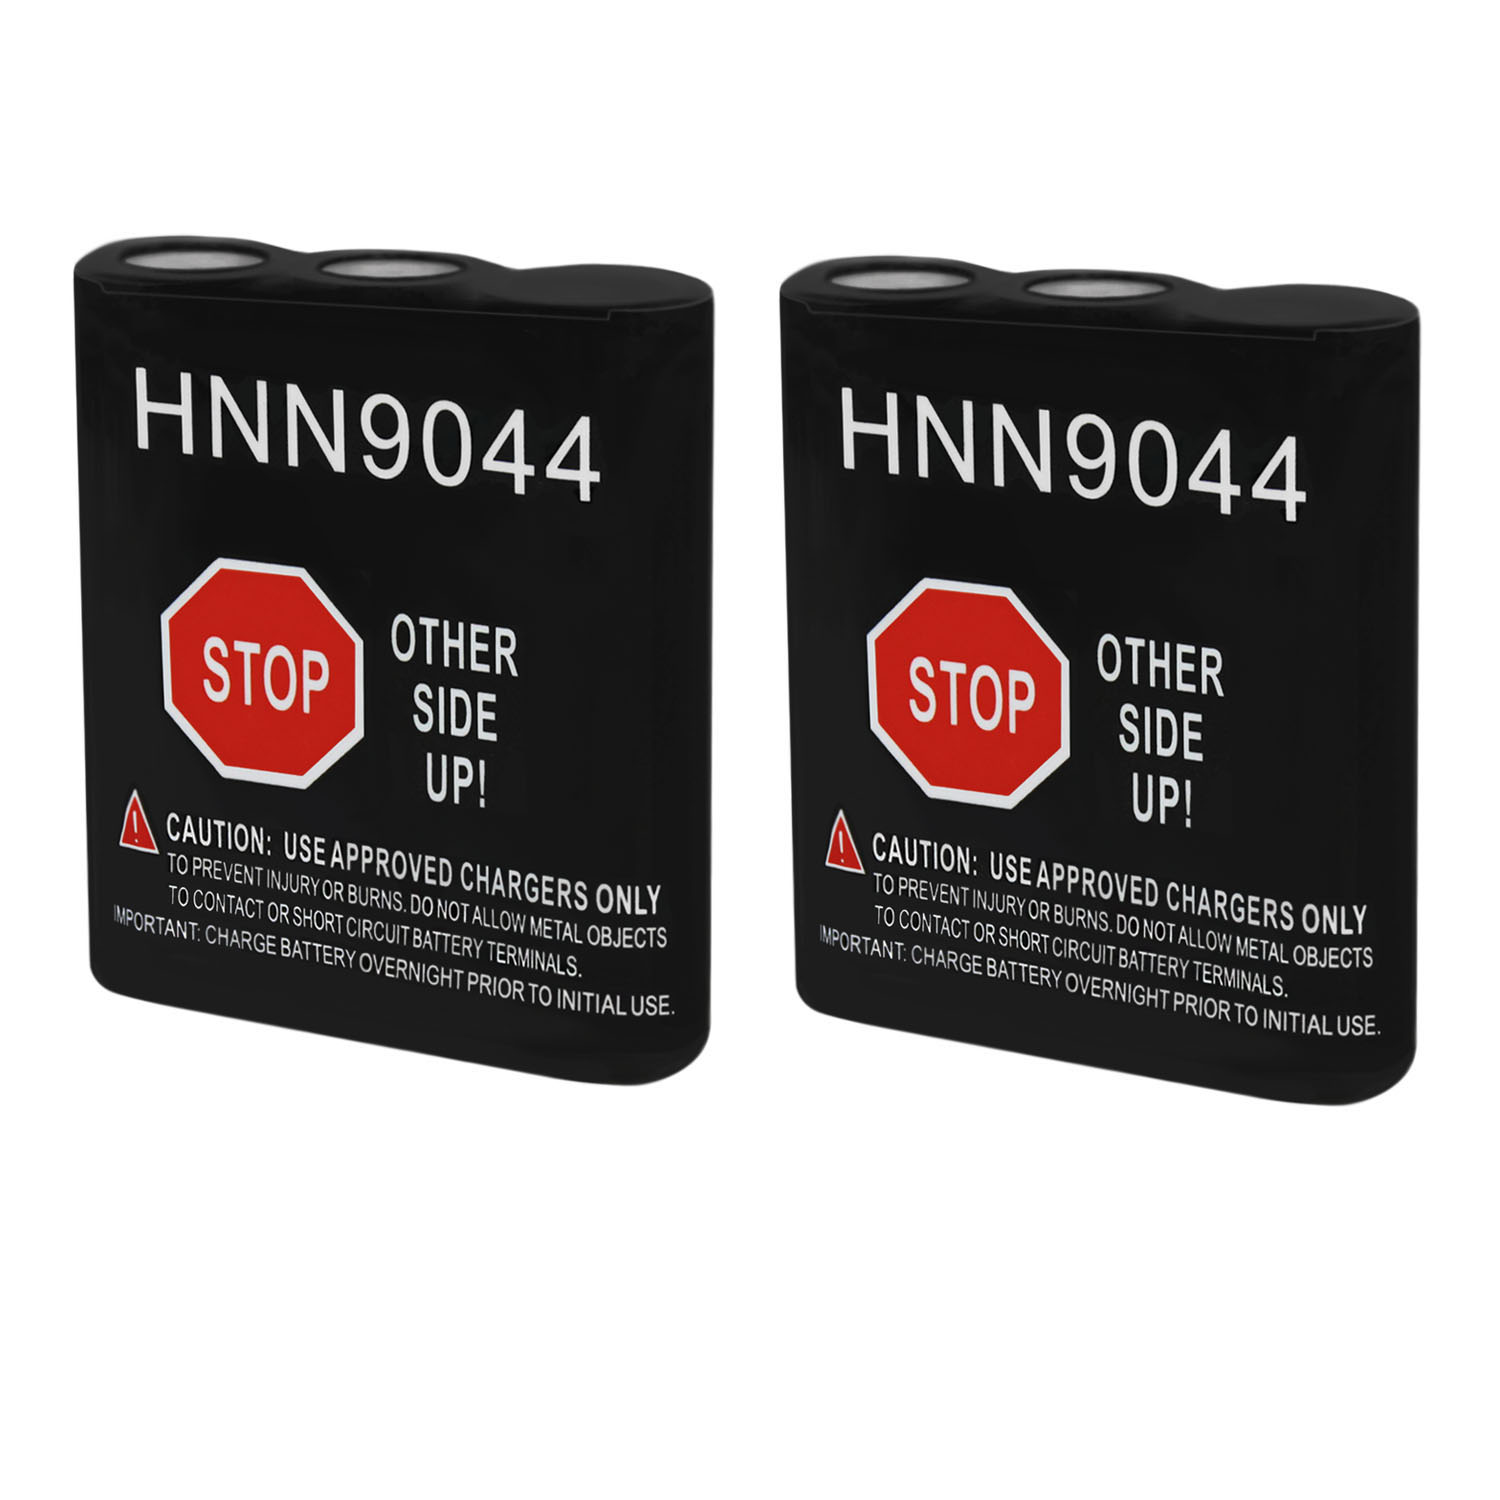 MLHNN9044 Battery for Motorola PRO1150,SP10,SP21 - 2 Pack